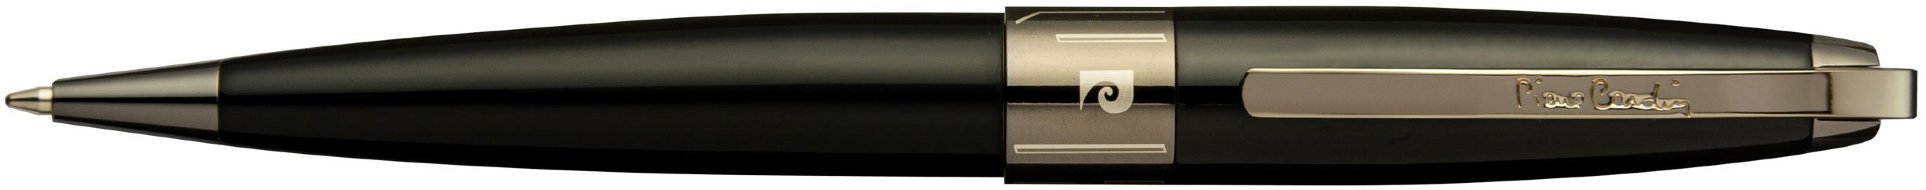 Шариковая ручка Pierre Cardin Progress черный лак, оружейный хром